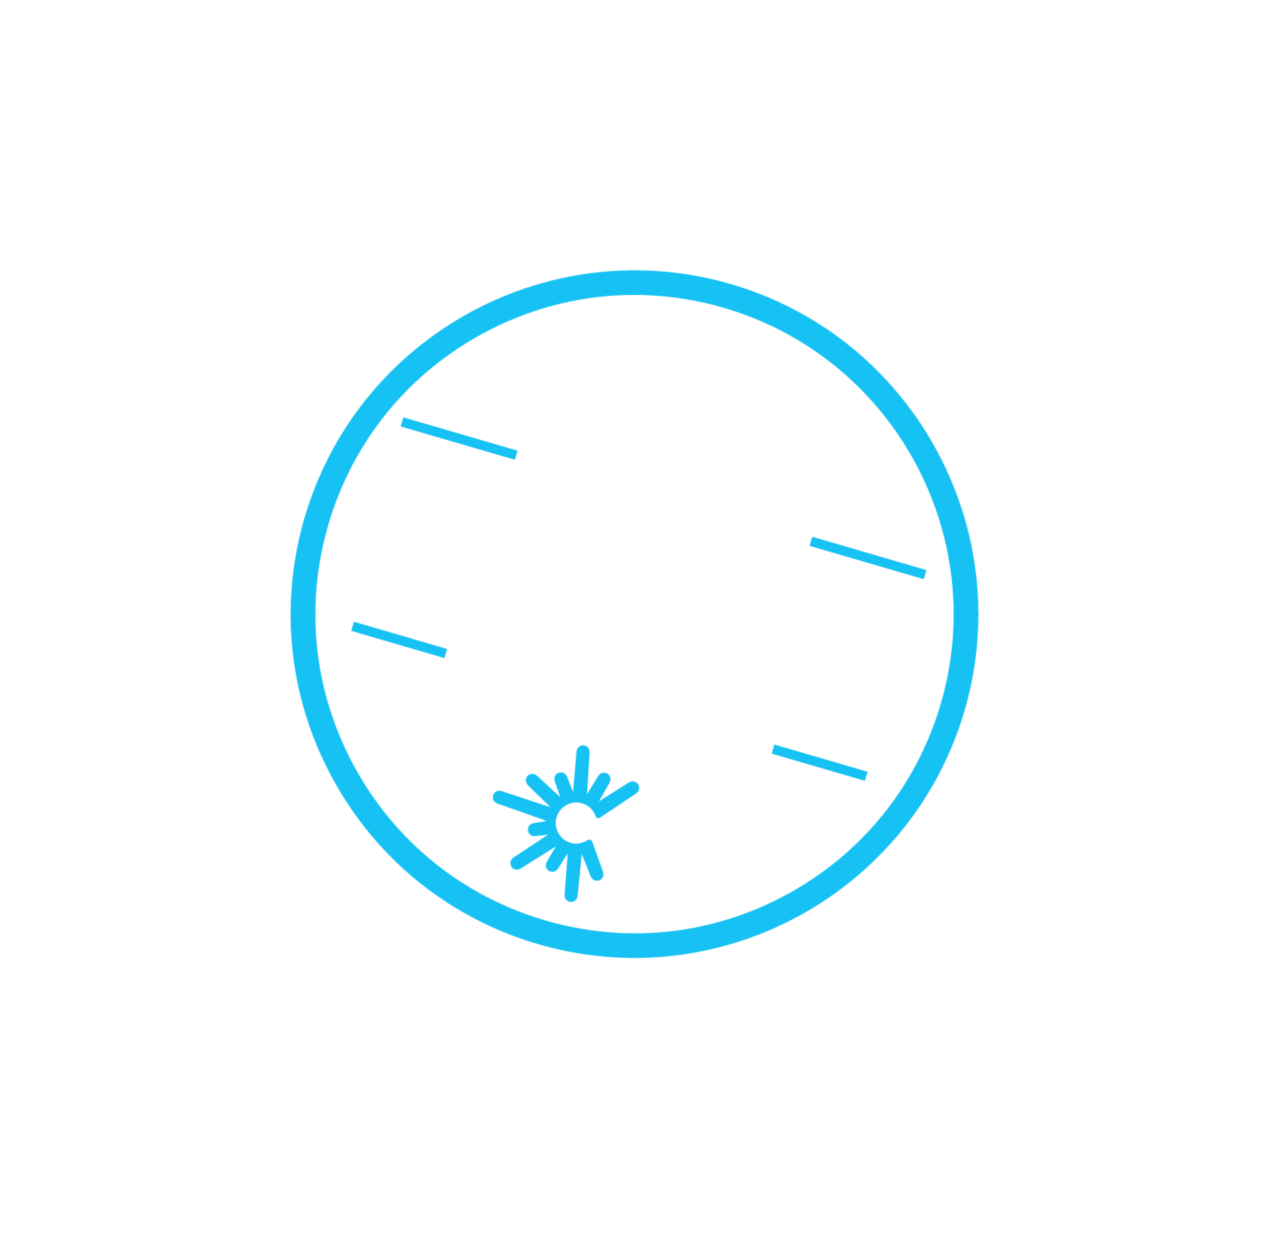 Federal Stimulus Program